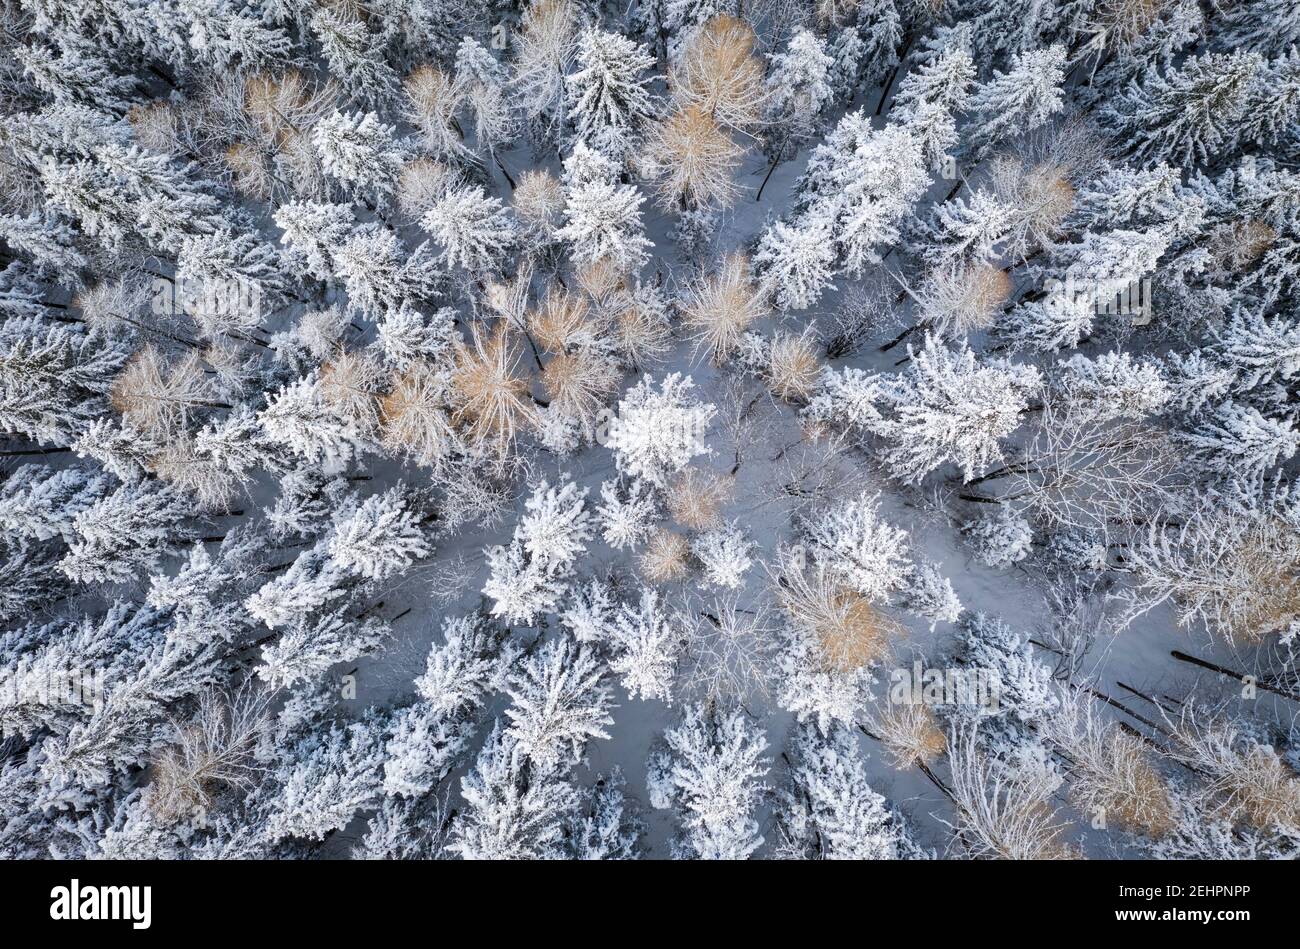 Vue aérienne d'un groupe d'arbres couverts de neige au col de Presolana. Colere, Val Seriana, Bergame district, Lombardie, Italie. Banque D'Images